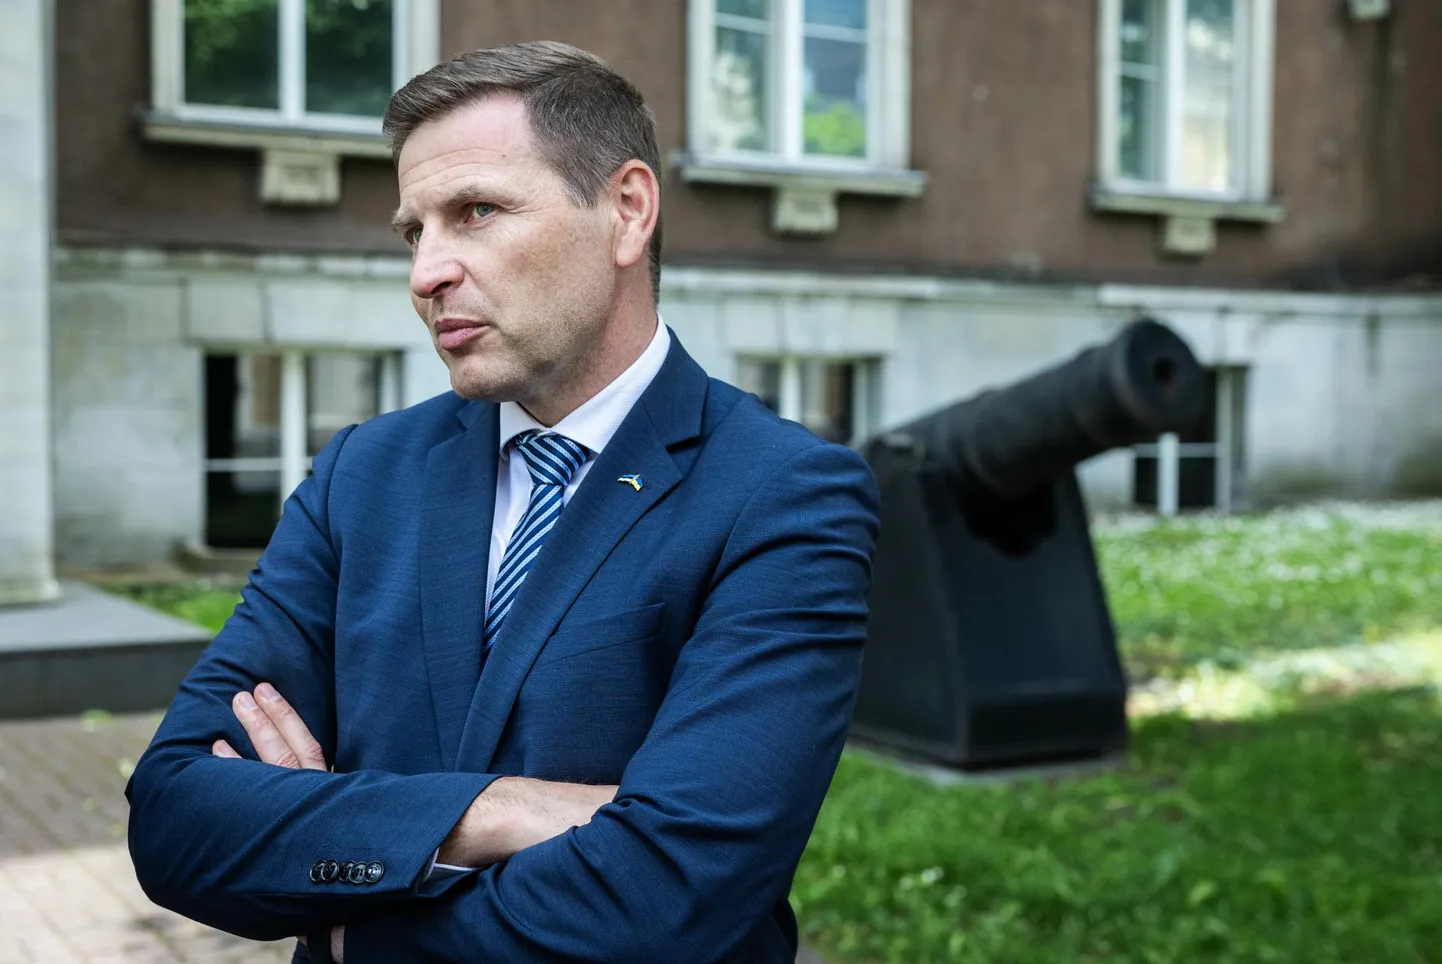 Министр обороны Ханно Певкур подвергся критике за недостаточную решимость в вопросе приобретения дополнительных боеприпасов.